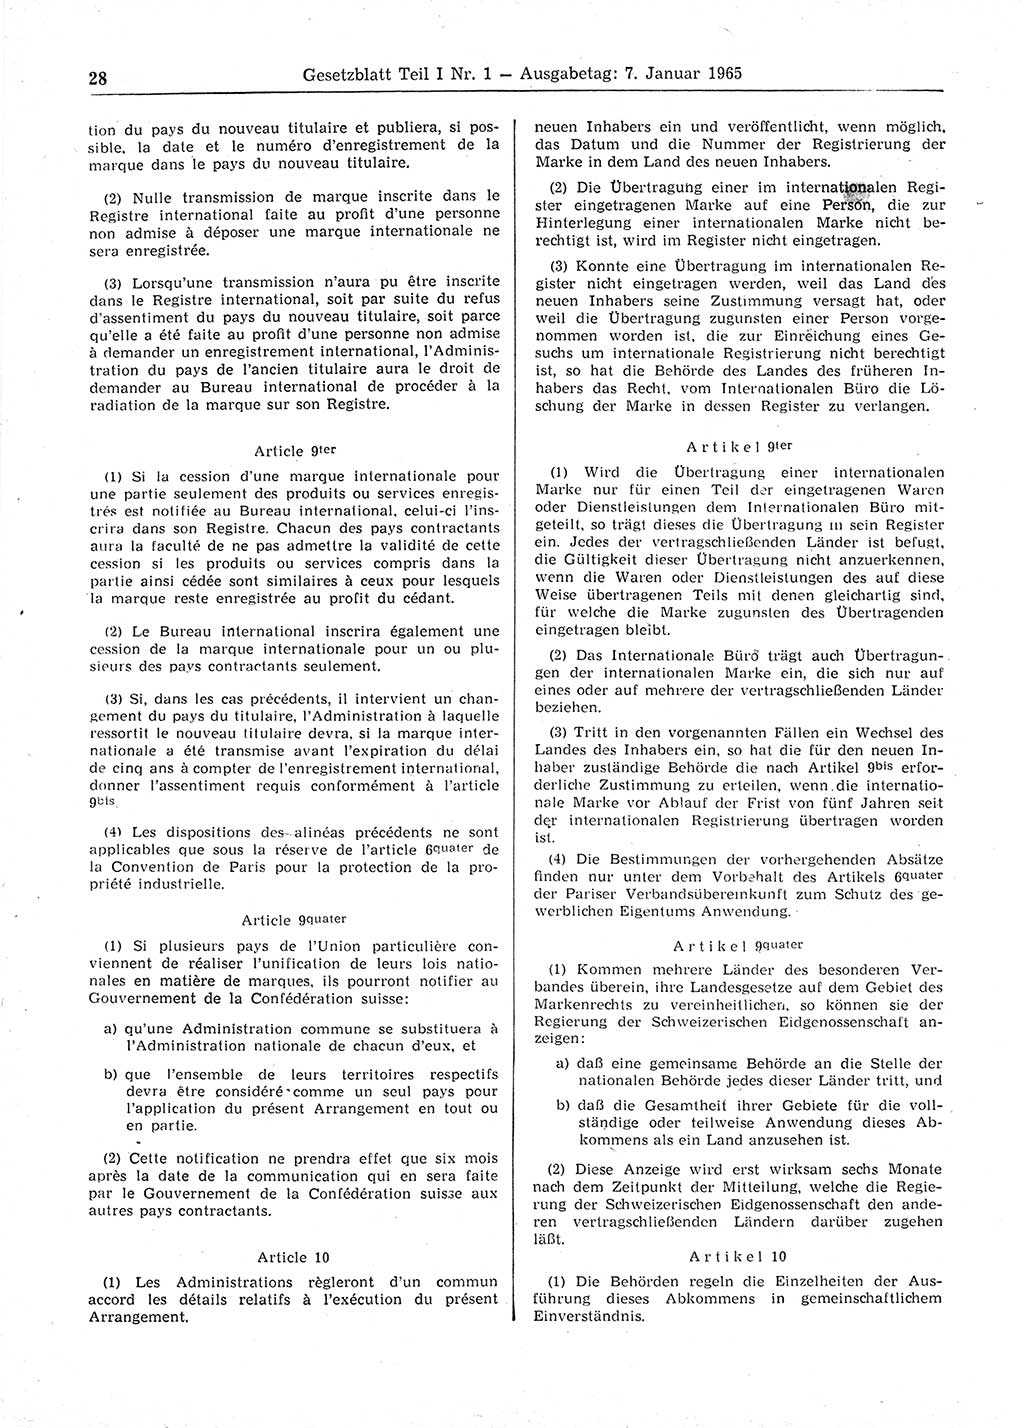 Gesetzblatt (GBl.) der Deutschen Demokratischen Republik (DDR) Teil Ⅰ 1965, Seite 28 (GBl. DDR Ⅰ 1965, S. 28)